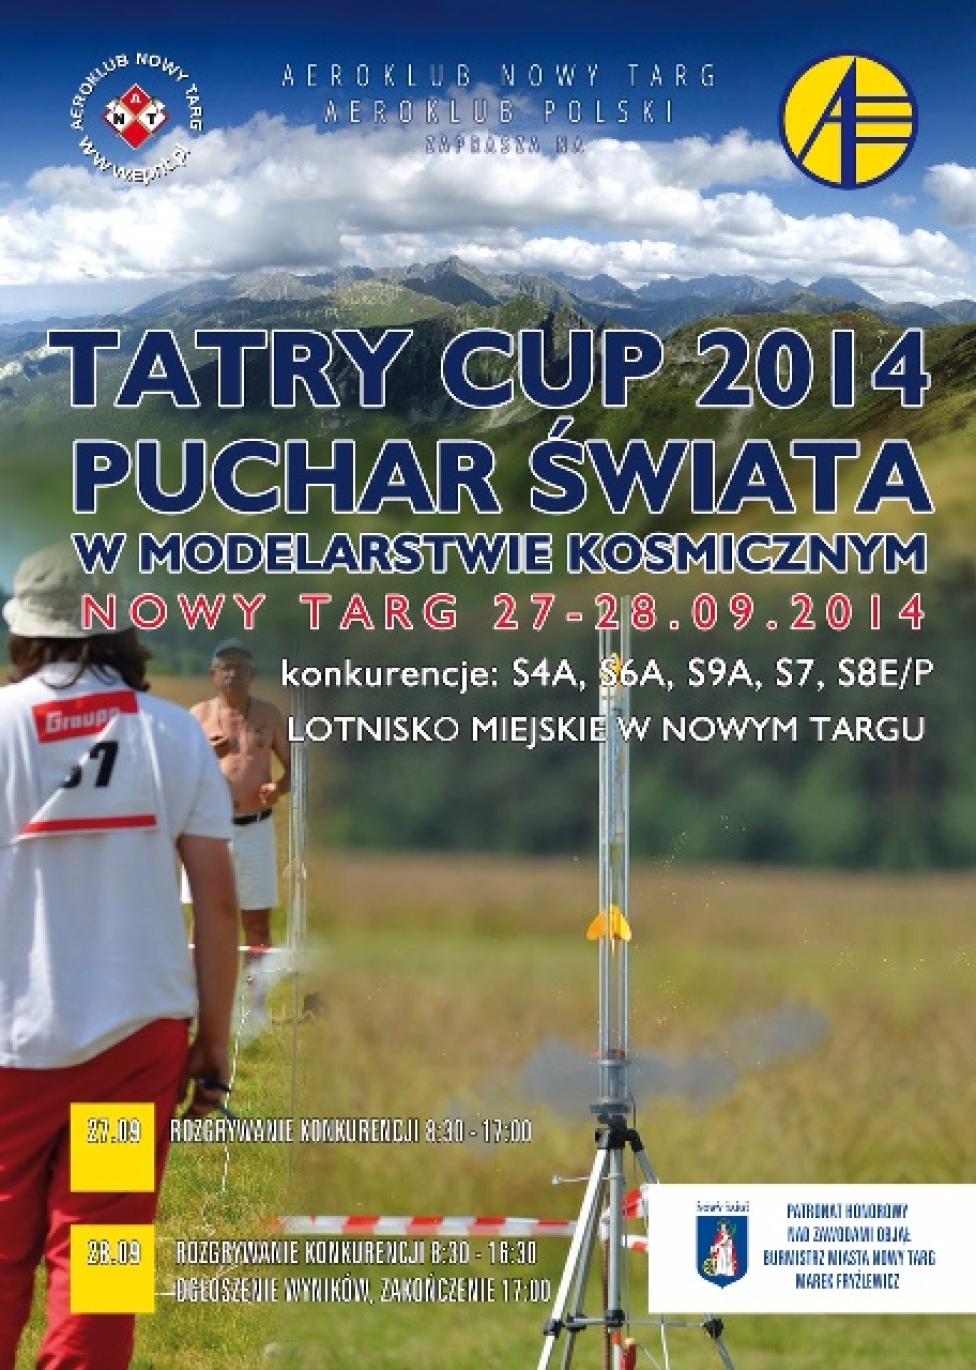 Puchar Świata w Modelarstwie Kosmicznym Tatry Cup 2014